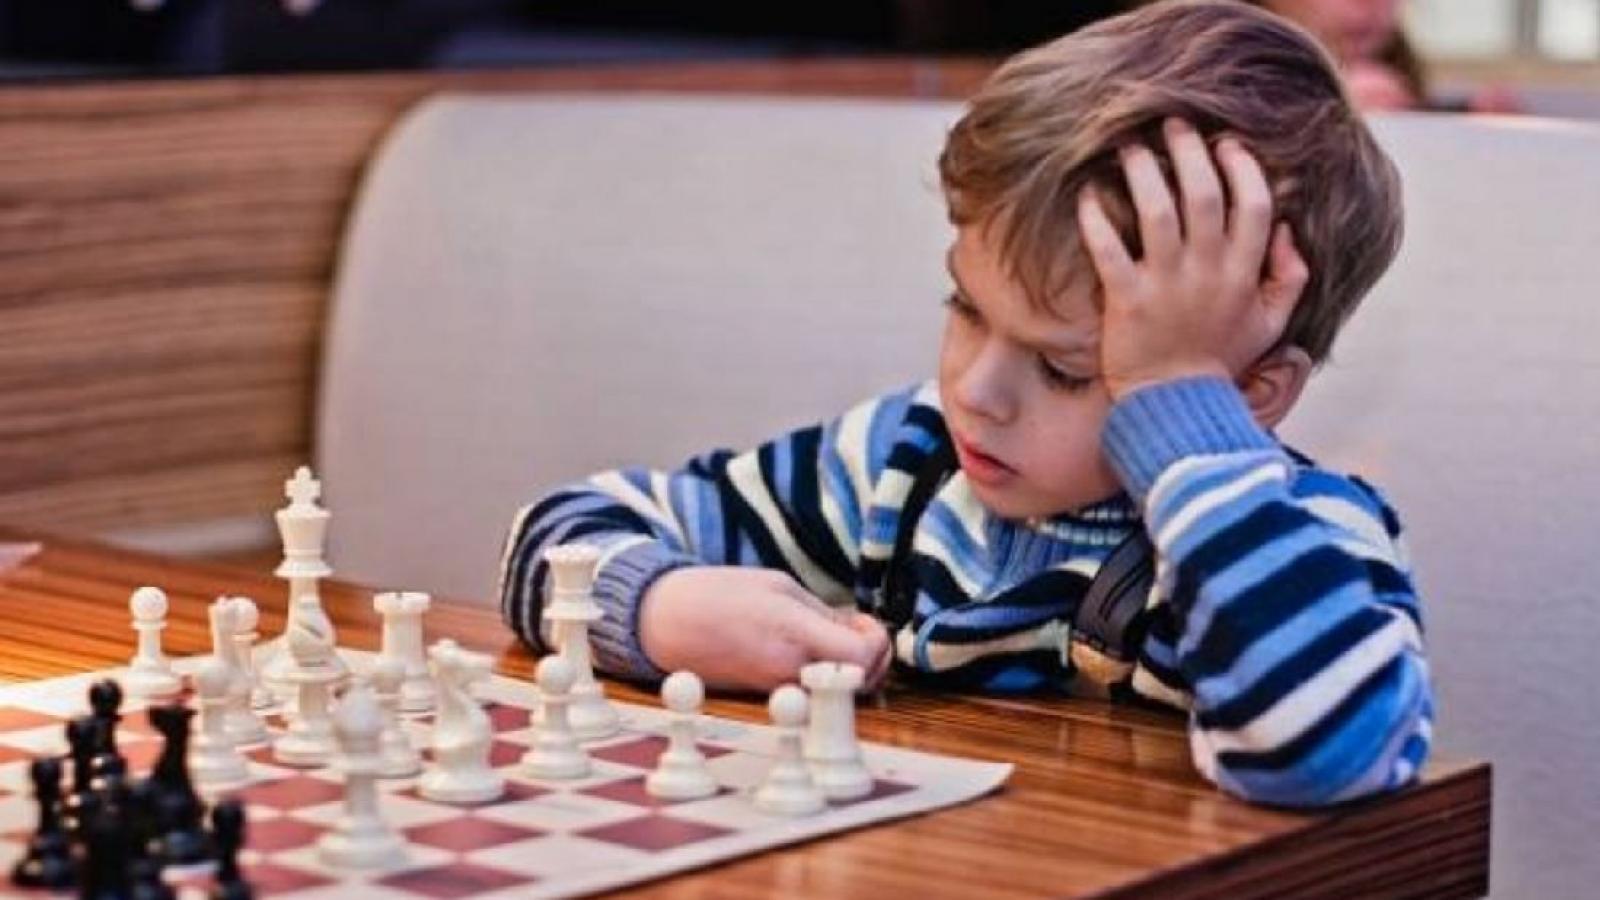 Терпение для ребенка. Шахматы для детей. Дети играют в шахматы. Ребенок шахматист. Мальчик с шахматами.